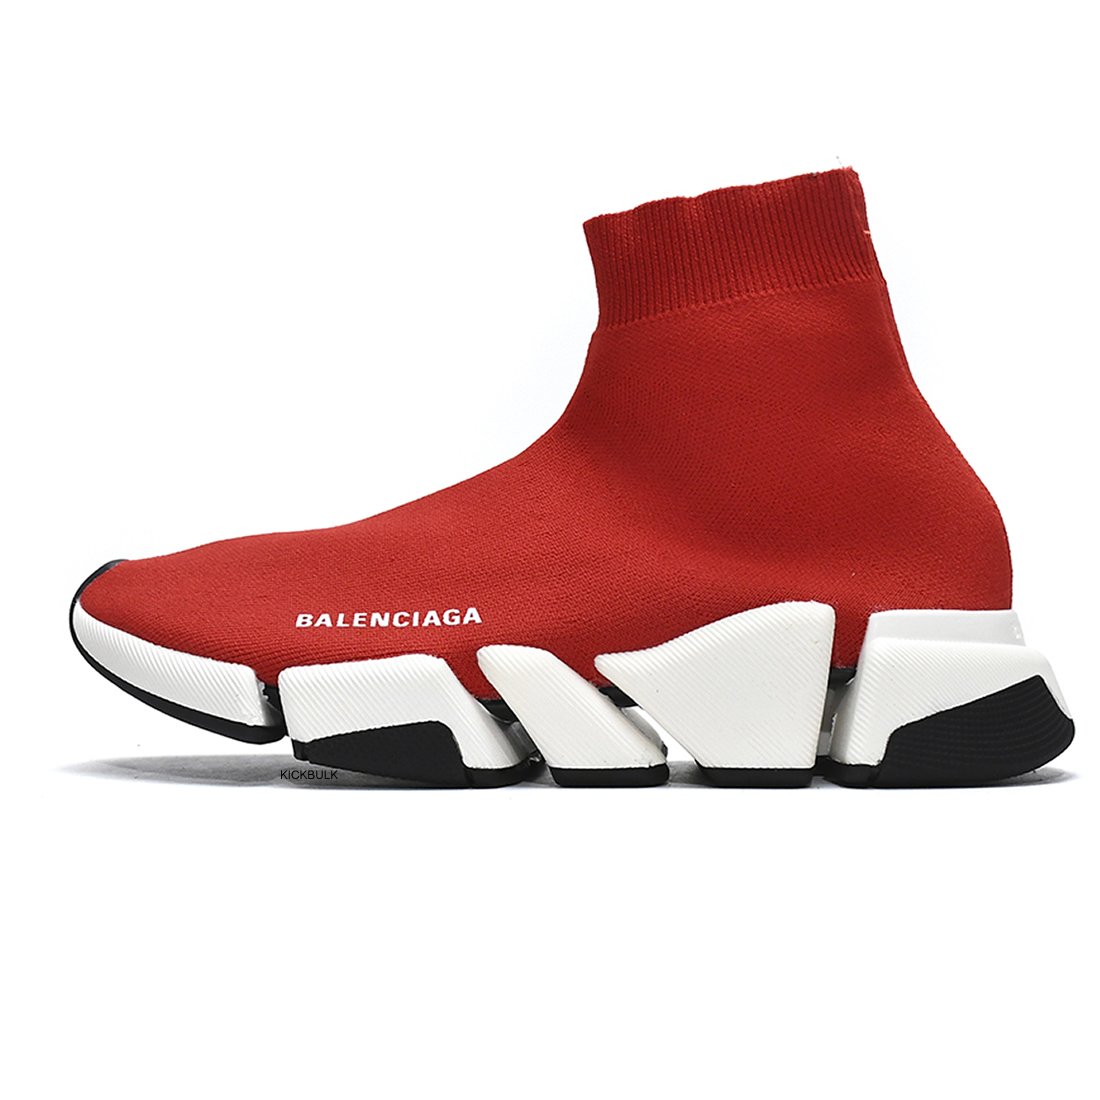 Balenciaga Speed 2 Sneaker Red 617196w17021015 1 - www.kickbulk.co